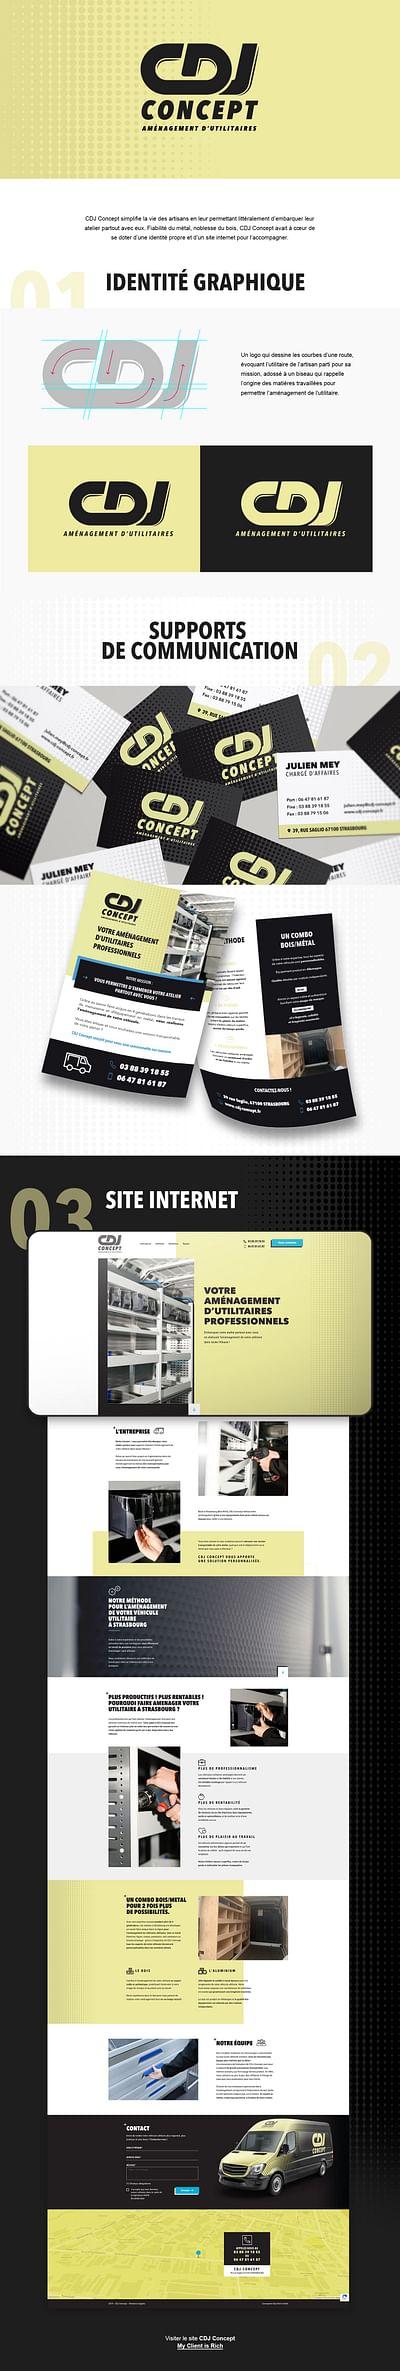 CDJ Concept : DA, Site Web et Webmarketing - Photographie